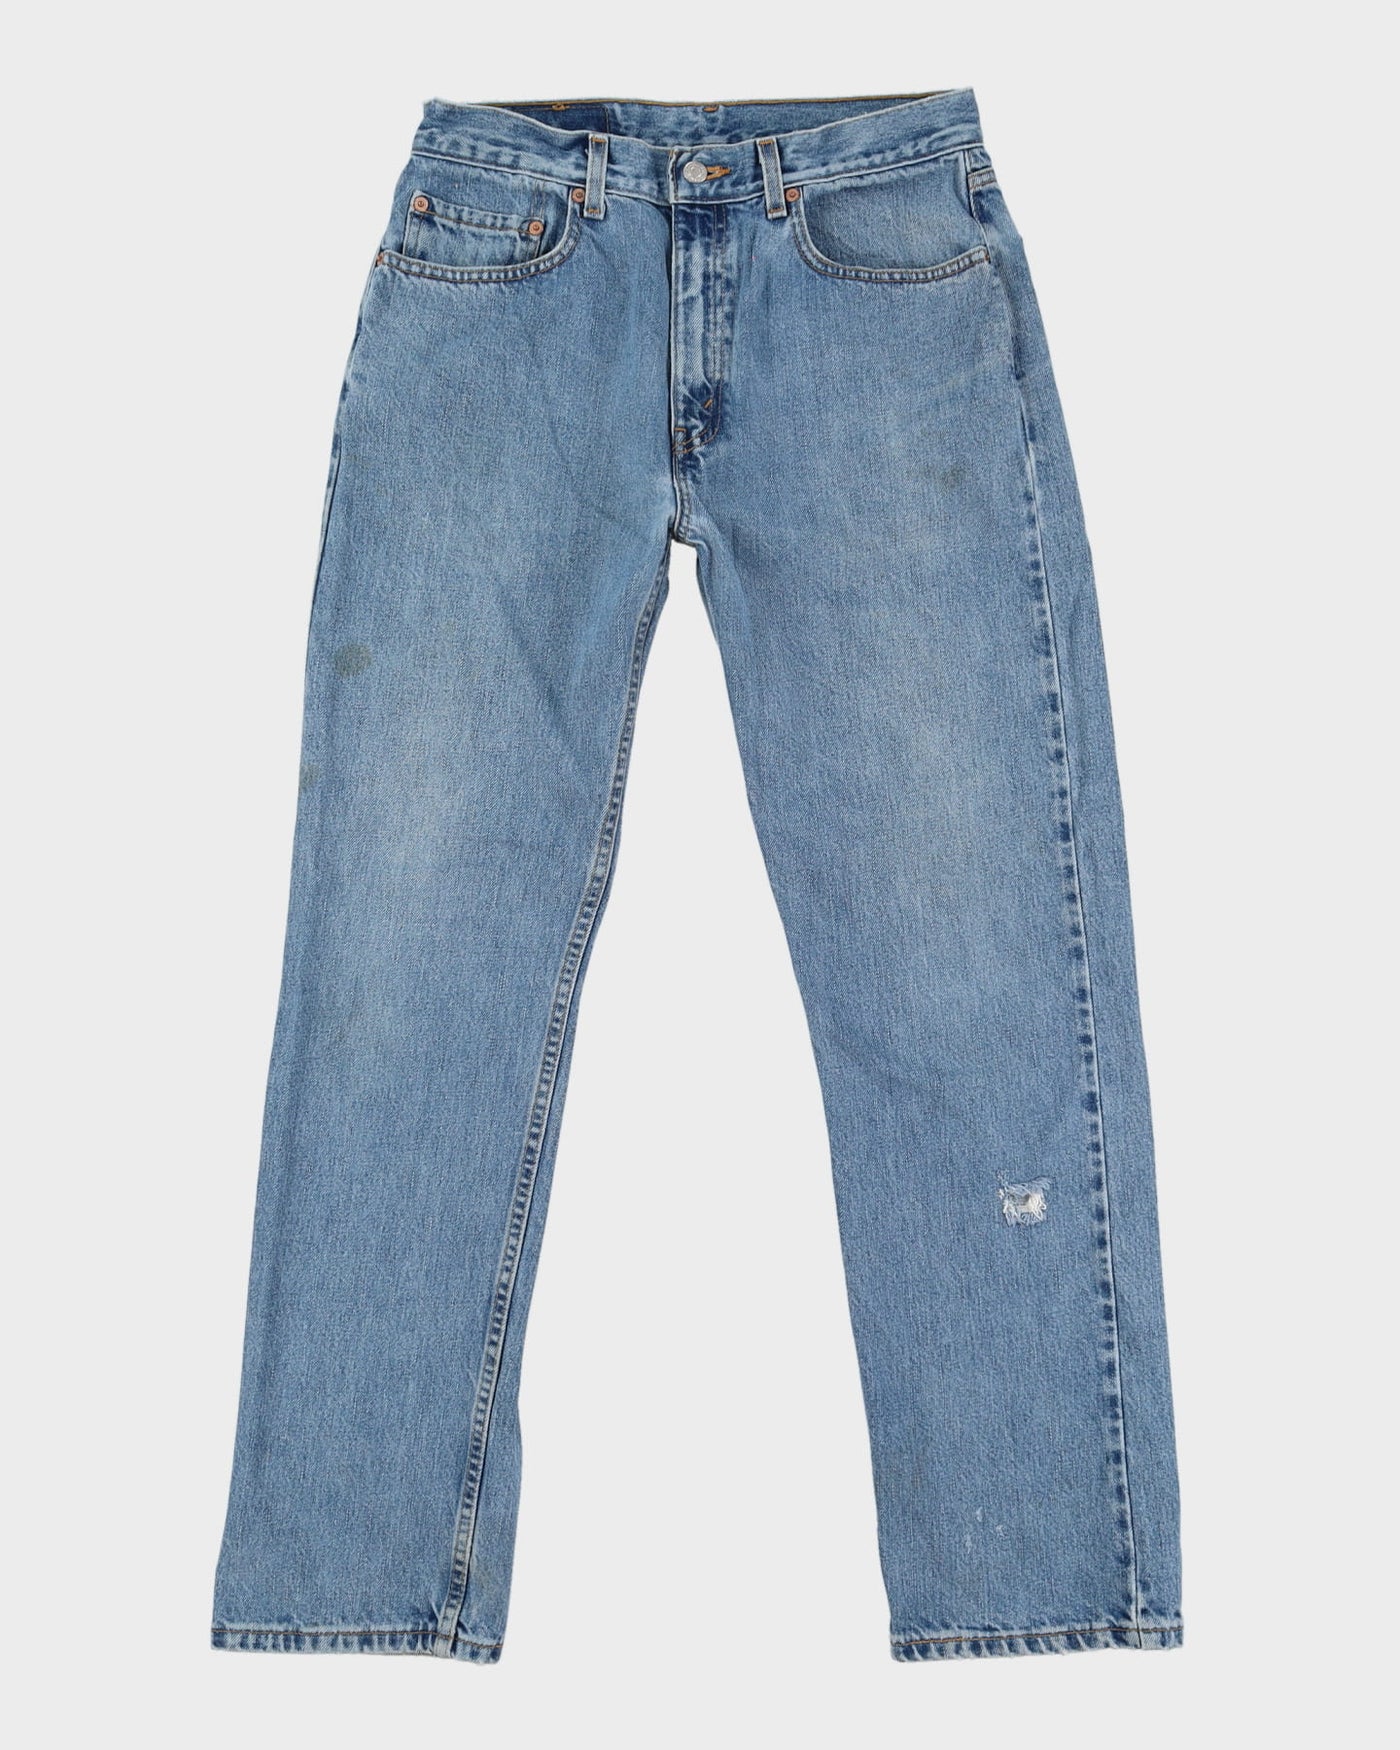 Vintage 90s Levi's 505 Blue Stone Wash Jeans - W33 L32